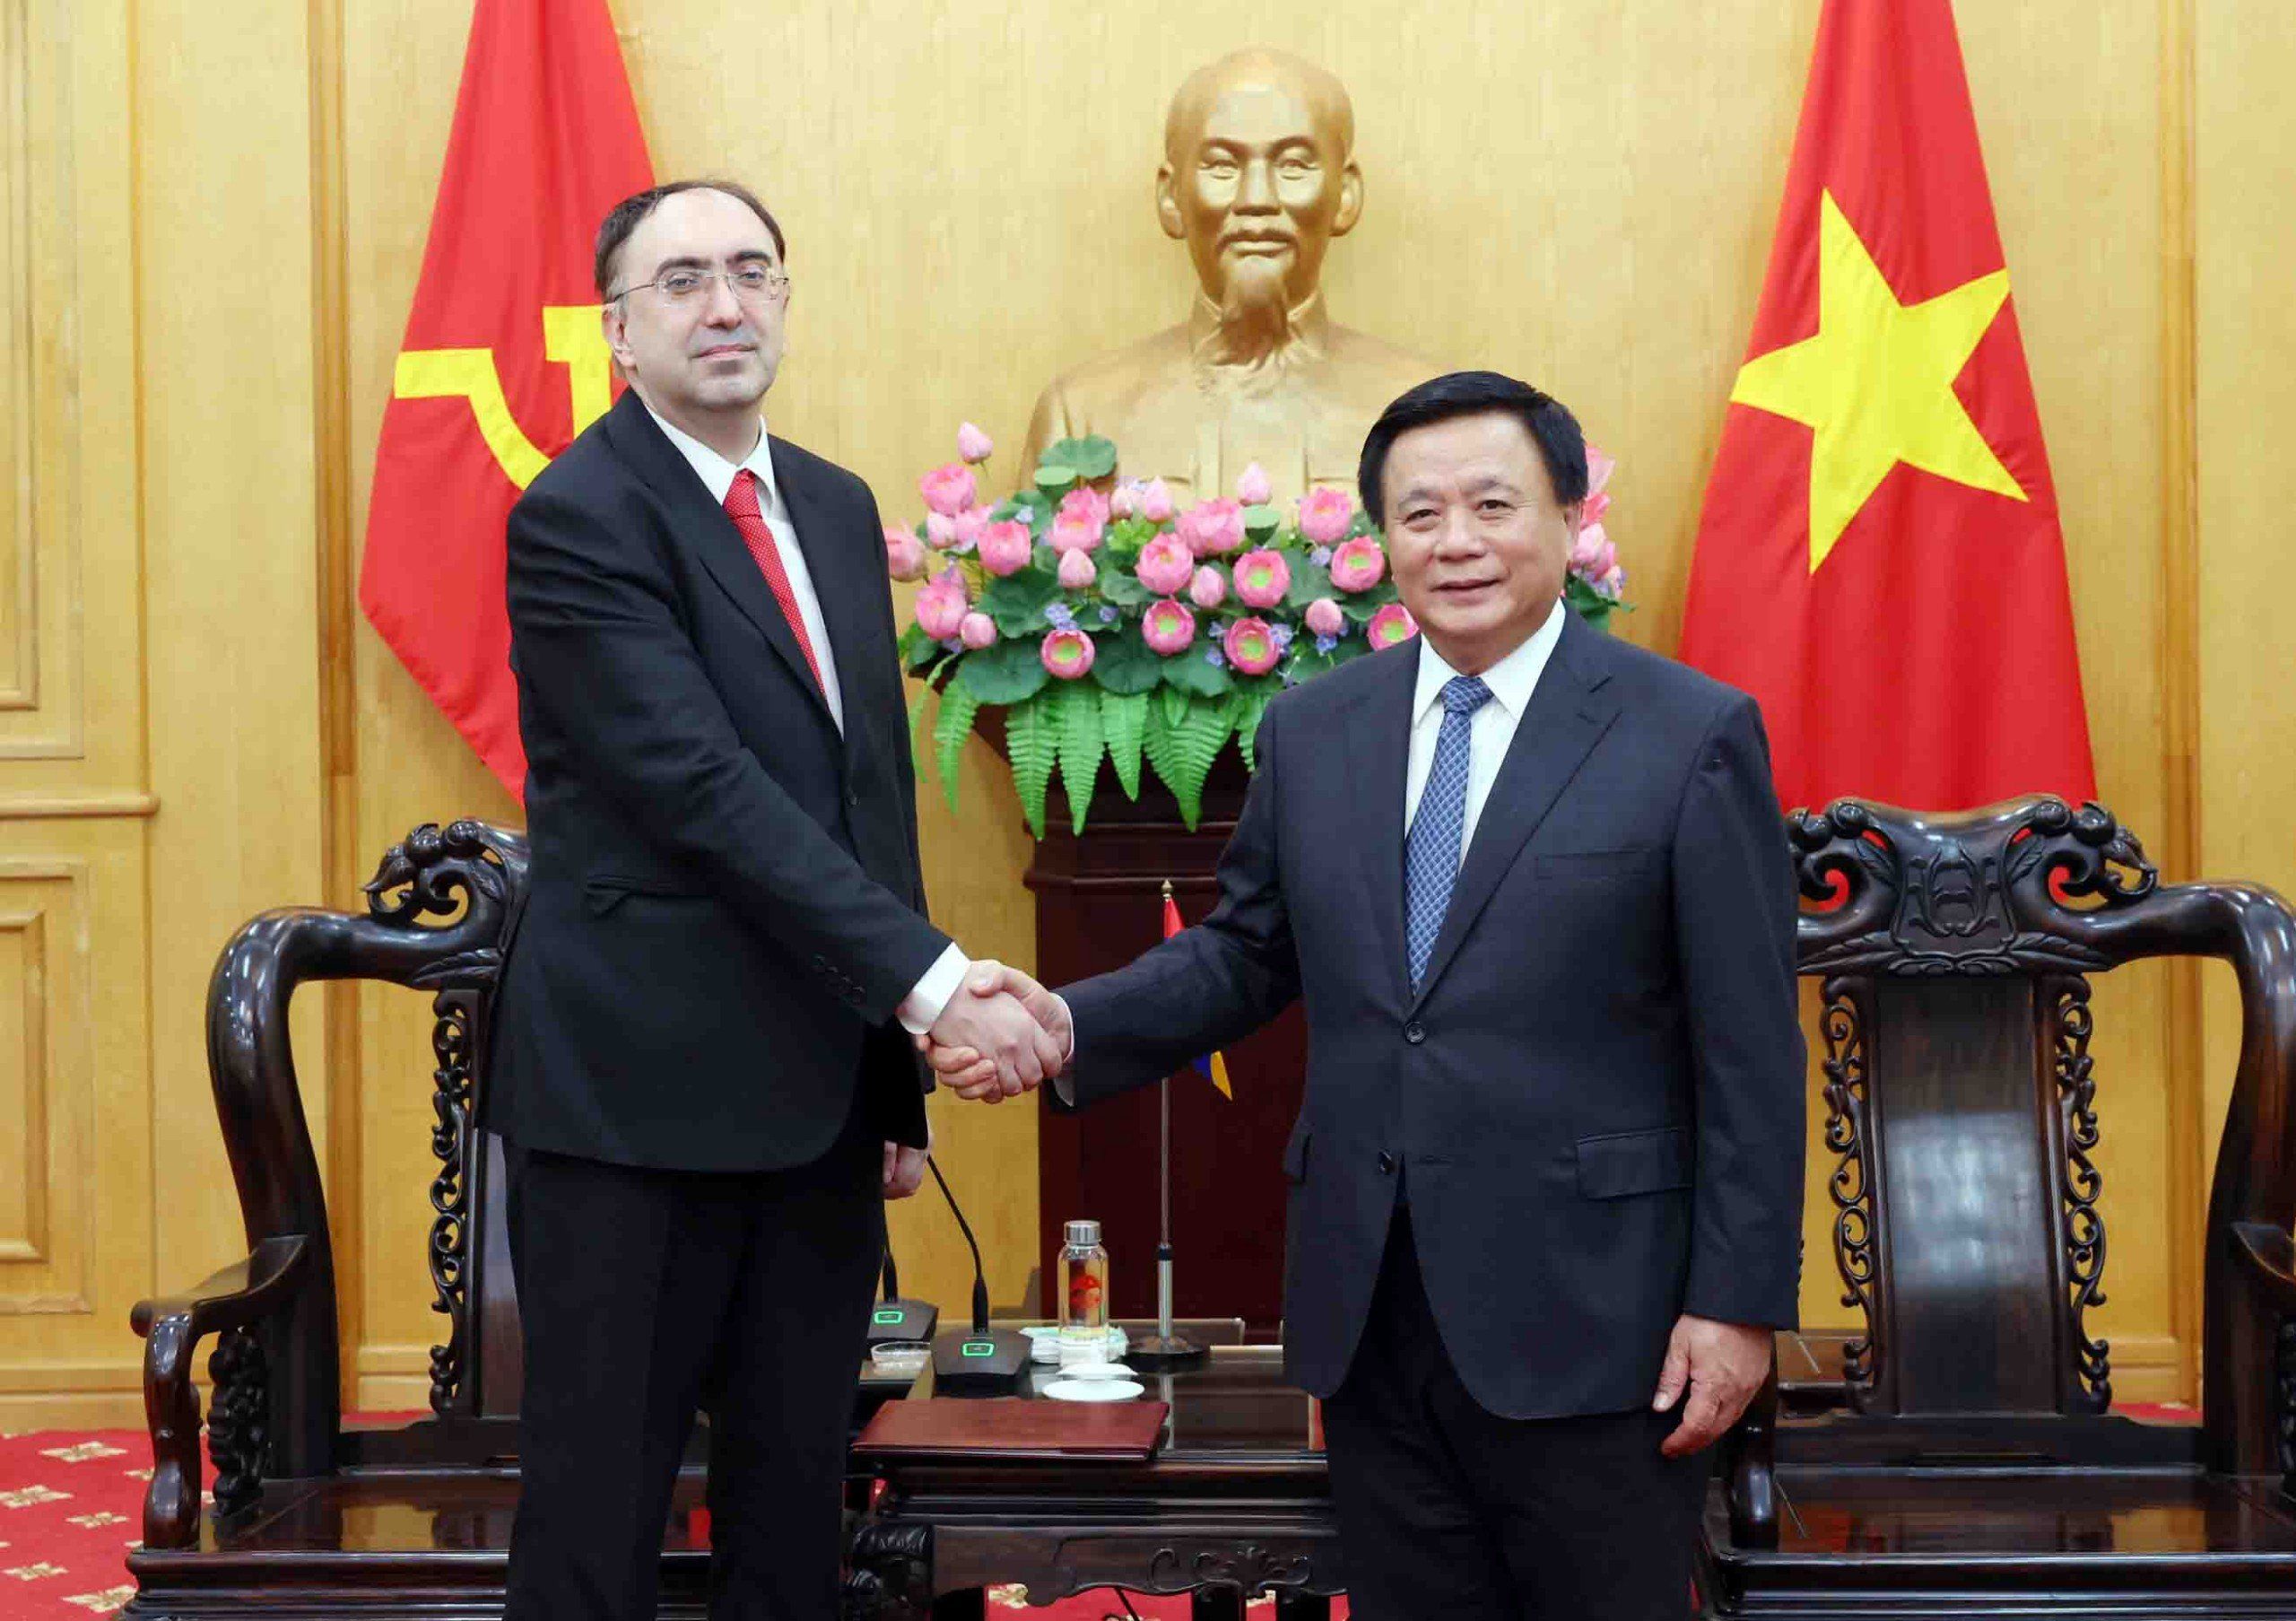 Tạo cơ sở vững chắc cho việc mở rộng, phát triển quan hệ 2 nước Việt Nam - Armenia trên các lĩnh vực